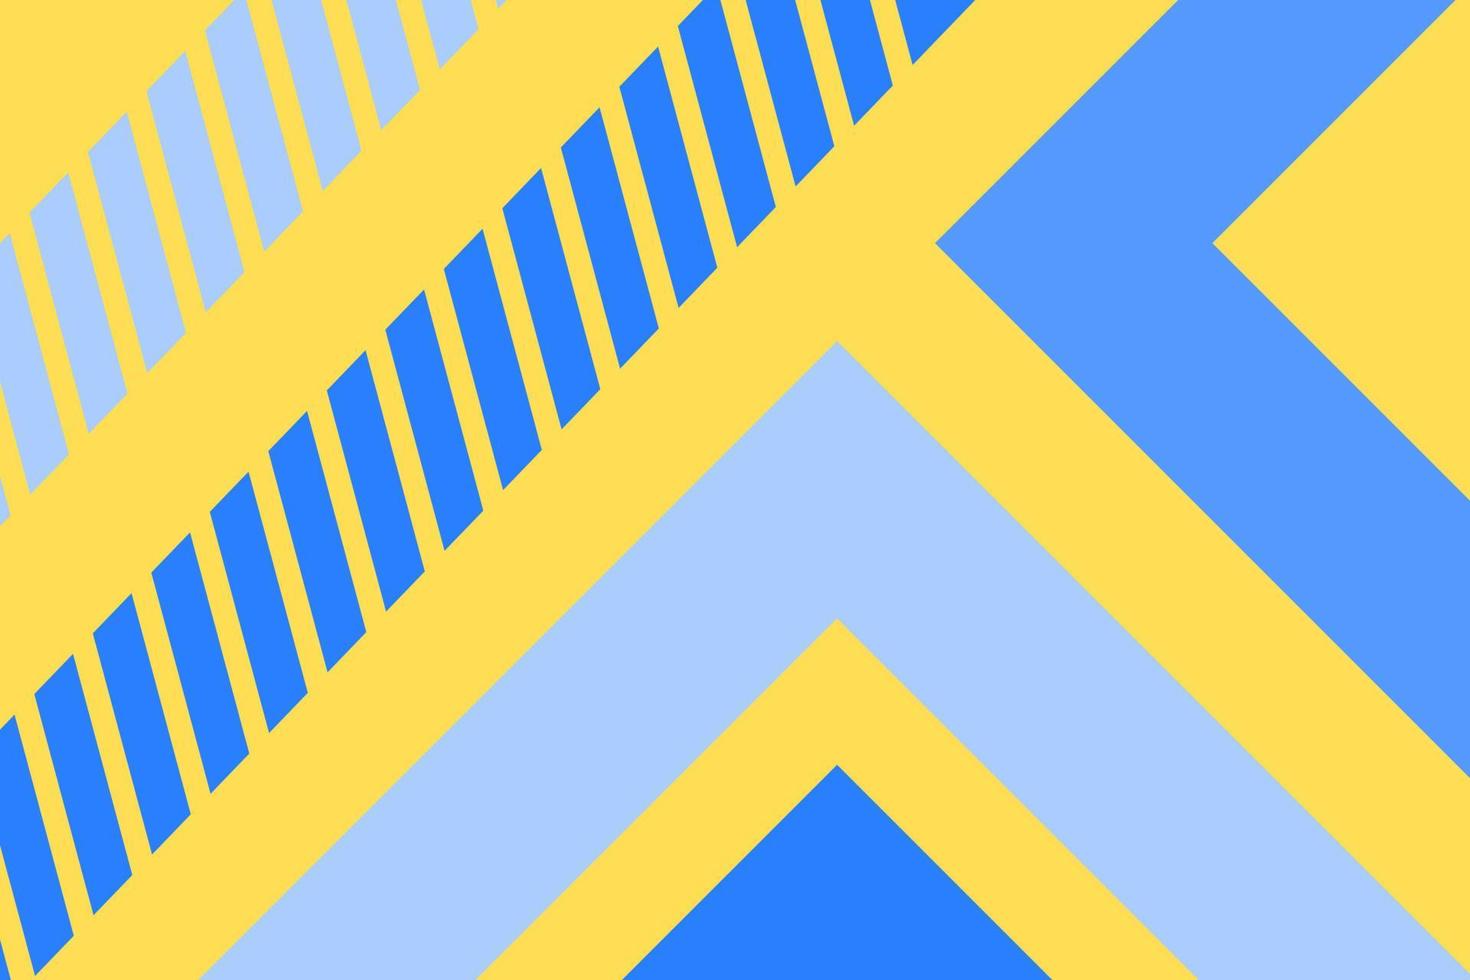 flacher hintergrund mit dreiecken und streifen in gelb und blau vektor